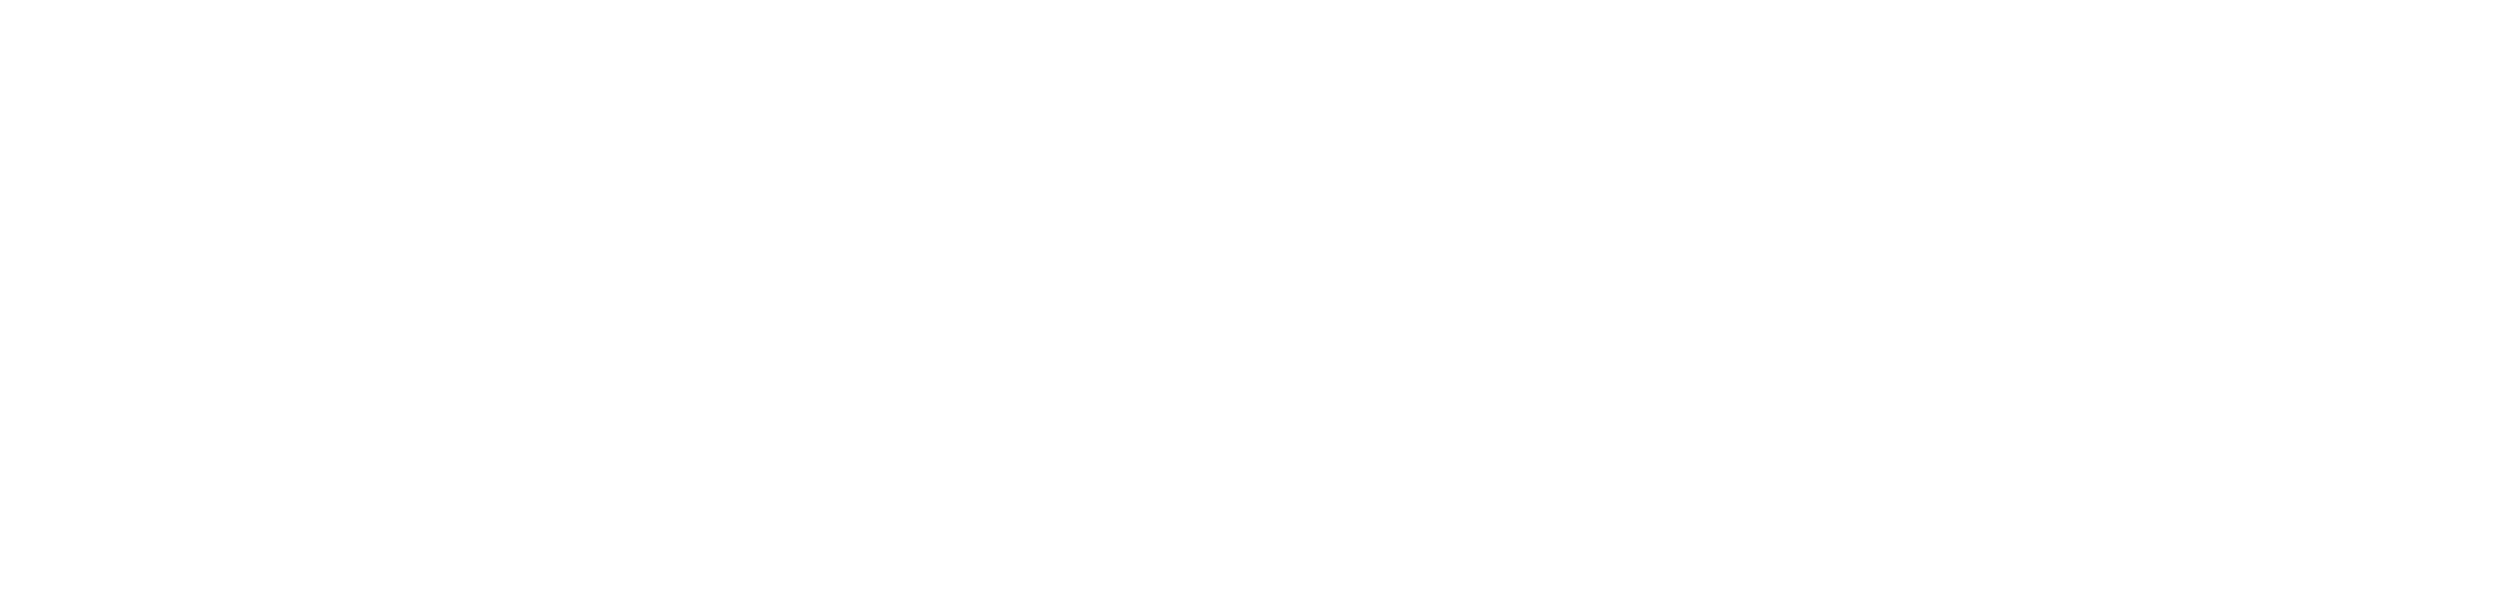 PRiME Center | St. Louis University